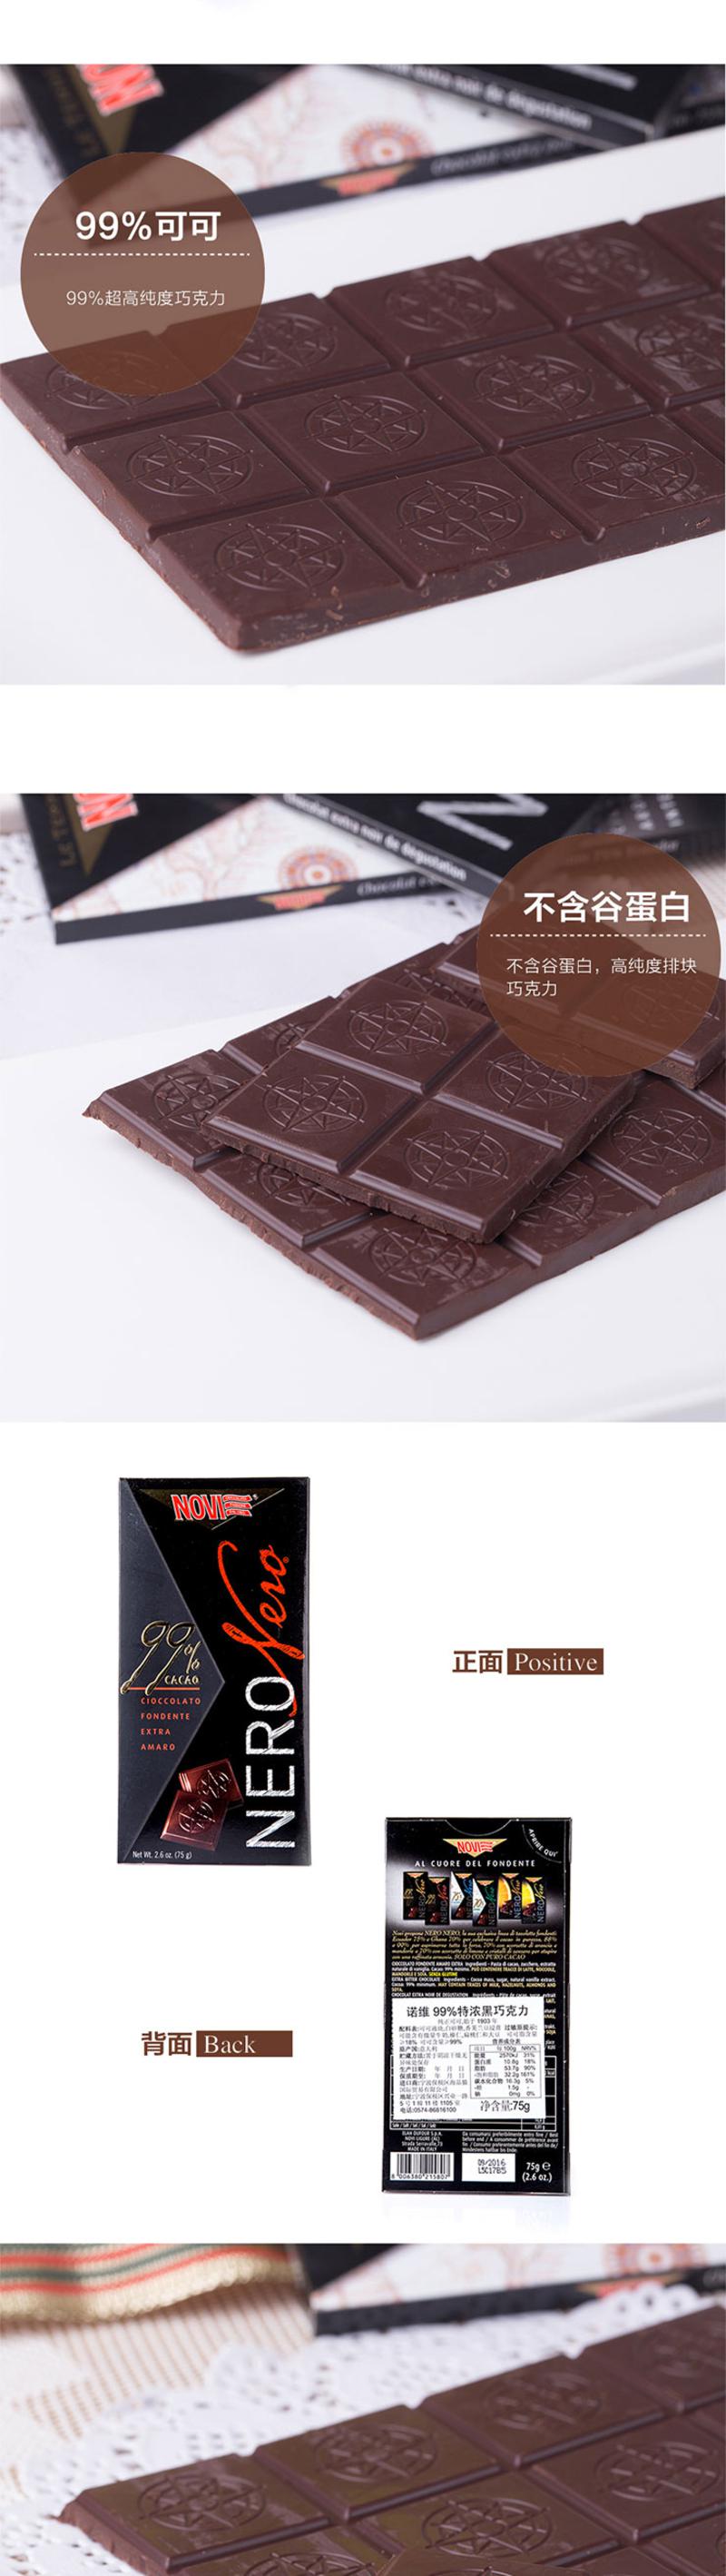 诺维99%特浓黑巧克力  意大利进口  75g 两块装